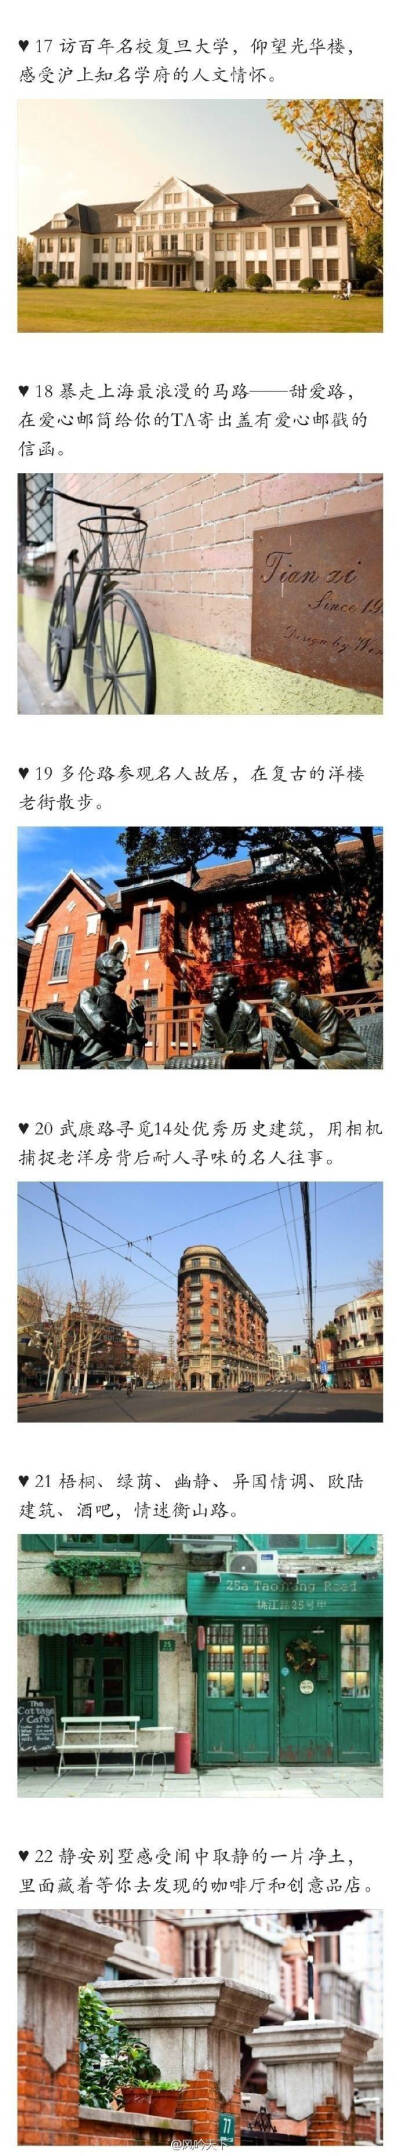 上海必去五十景点